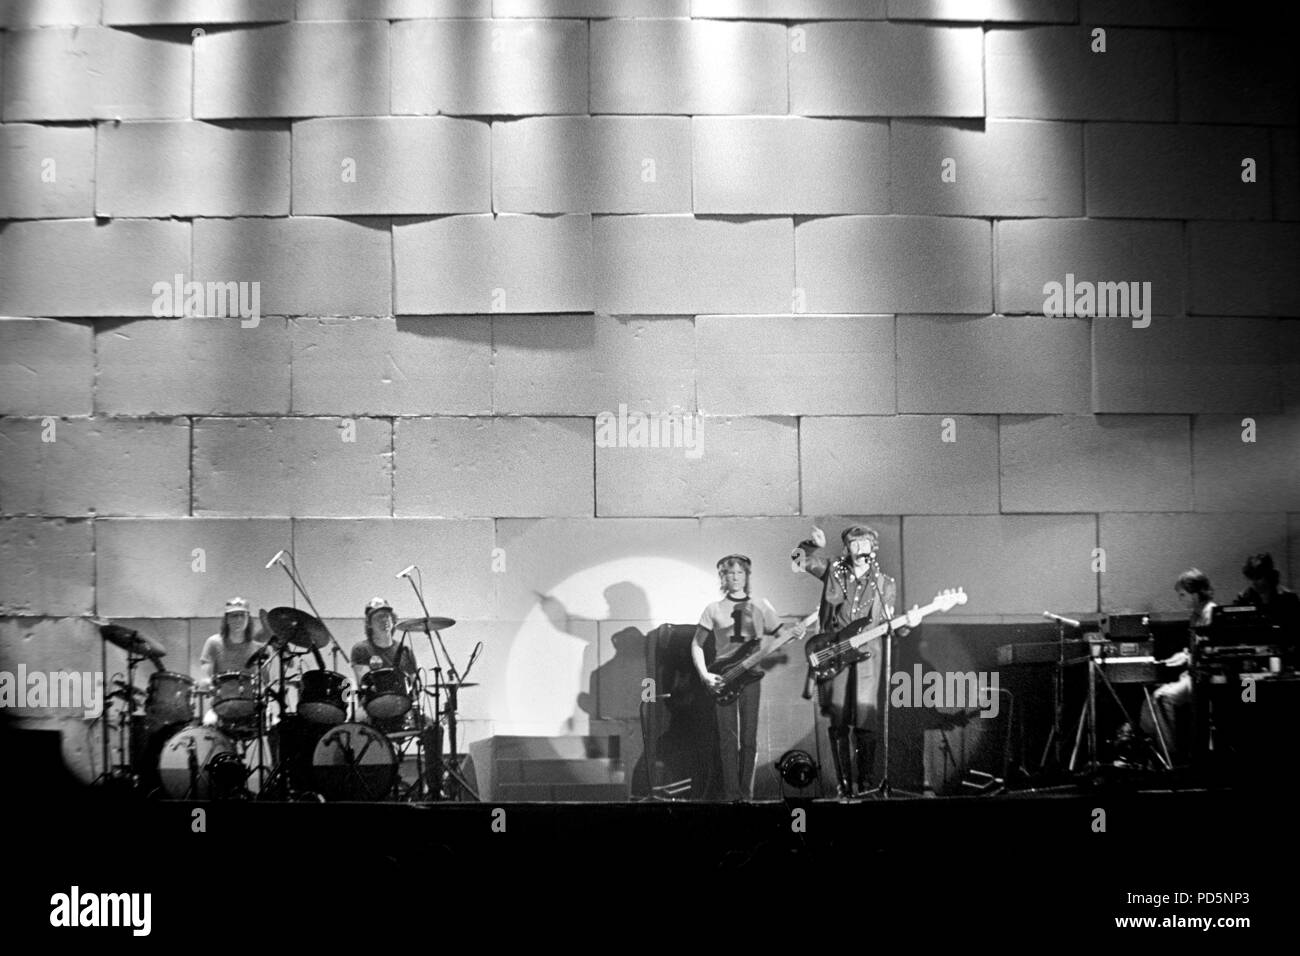 Dortmund, Deutschland, 20. Feb 1981 - British Psychedelic Rock Band PINK FLOYD DURCHFÜHRUNG DER WAND Konzert in der Westfalenhalle in Dortmund/Deutschland (Digital Image von einem b/w-Film-negativ) Stockfoto